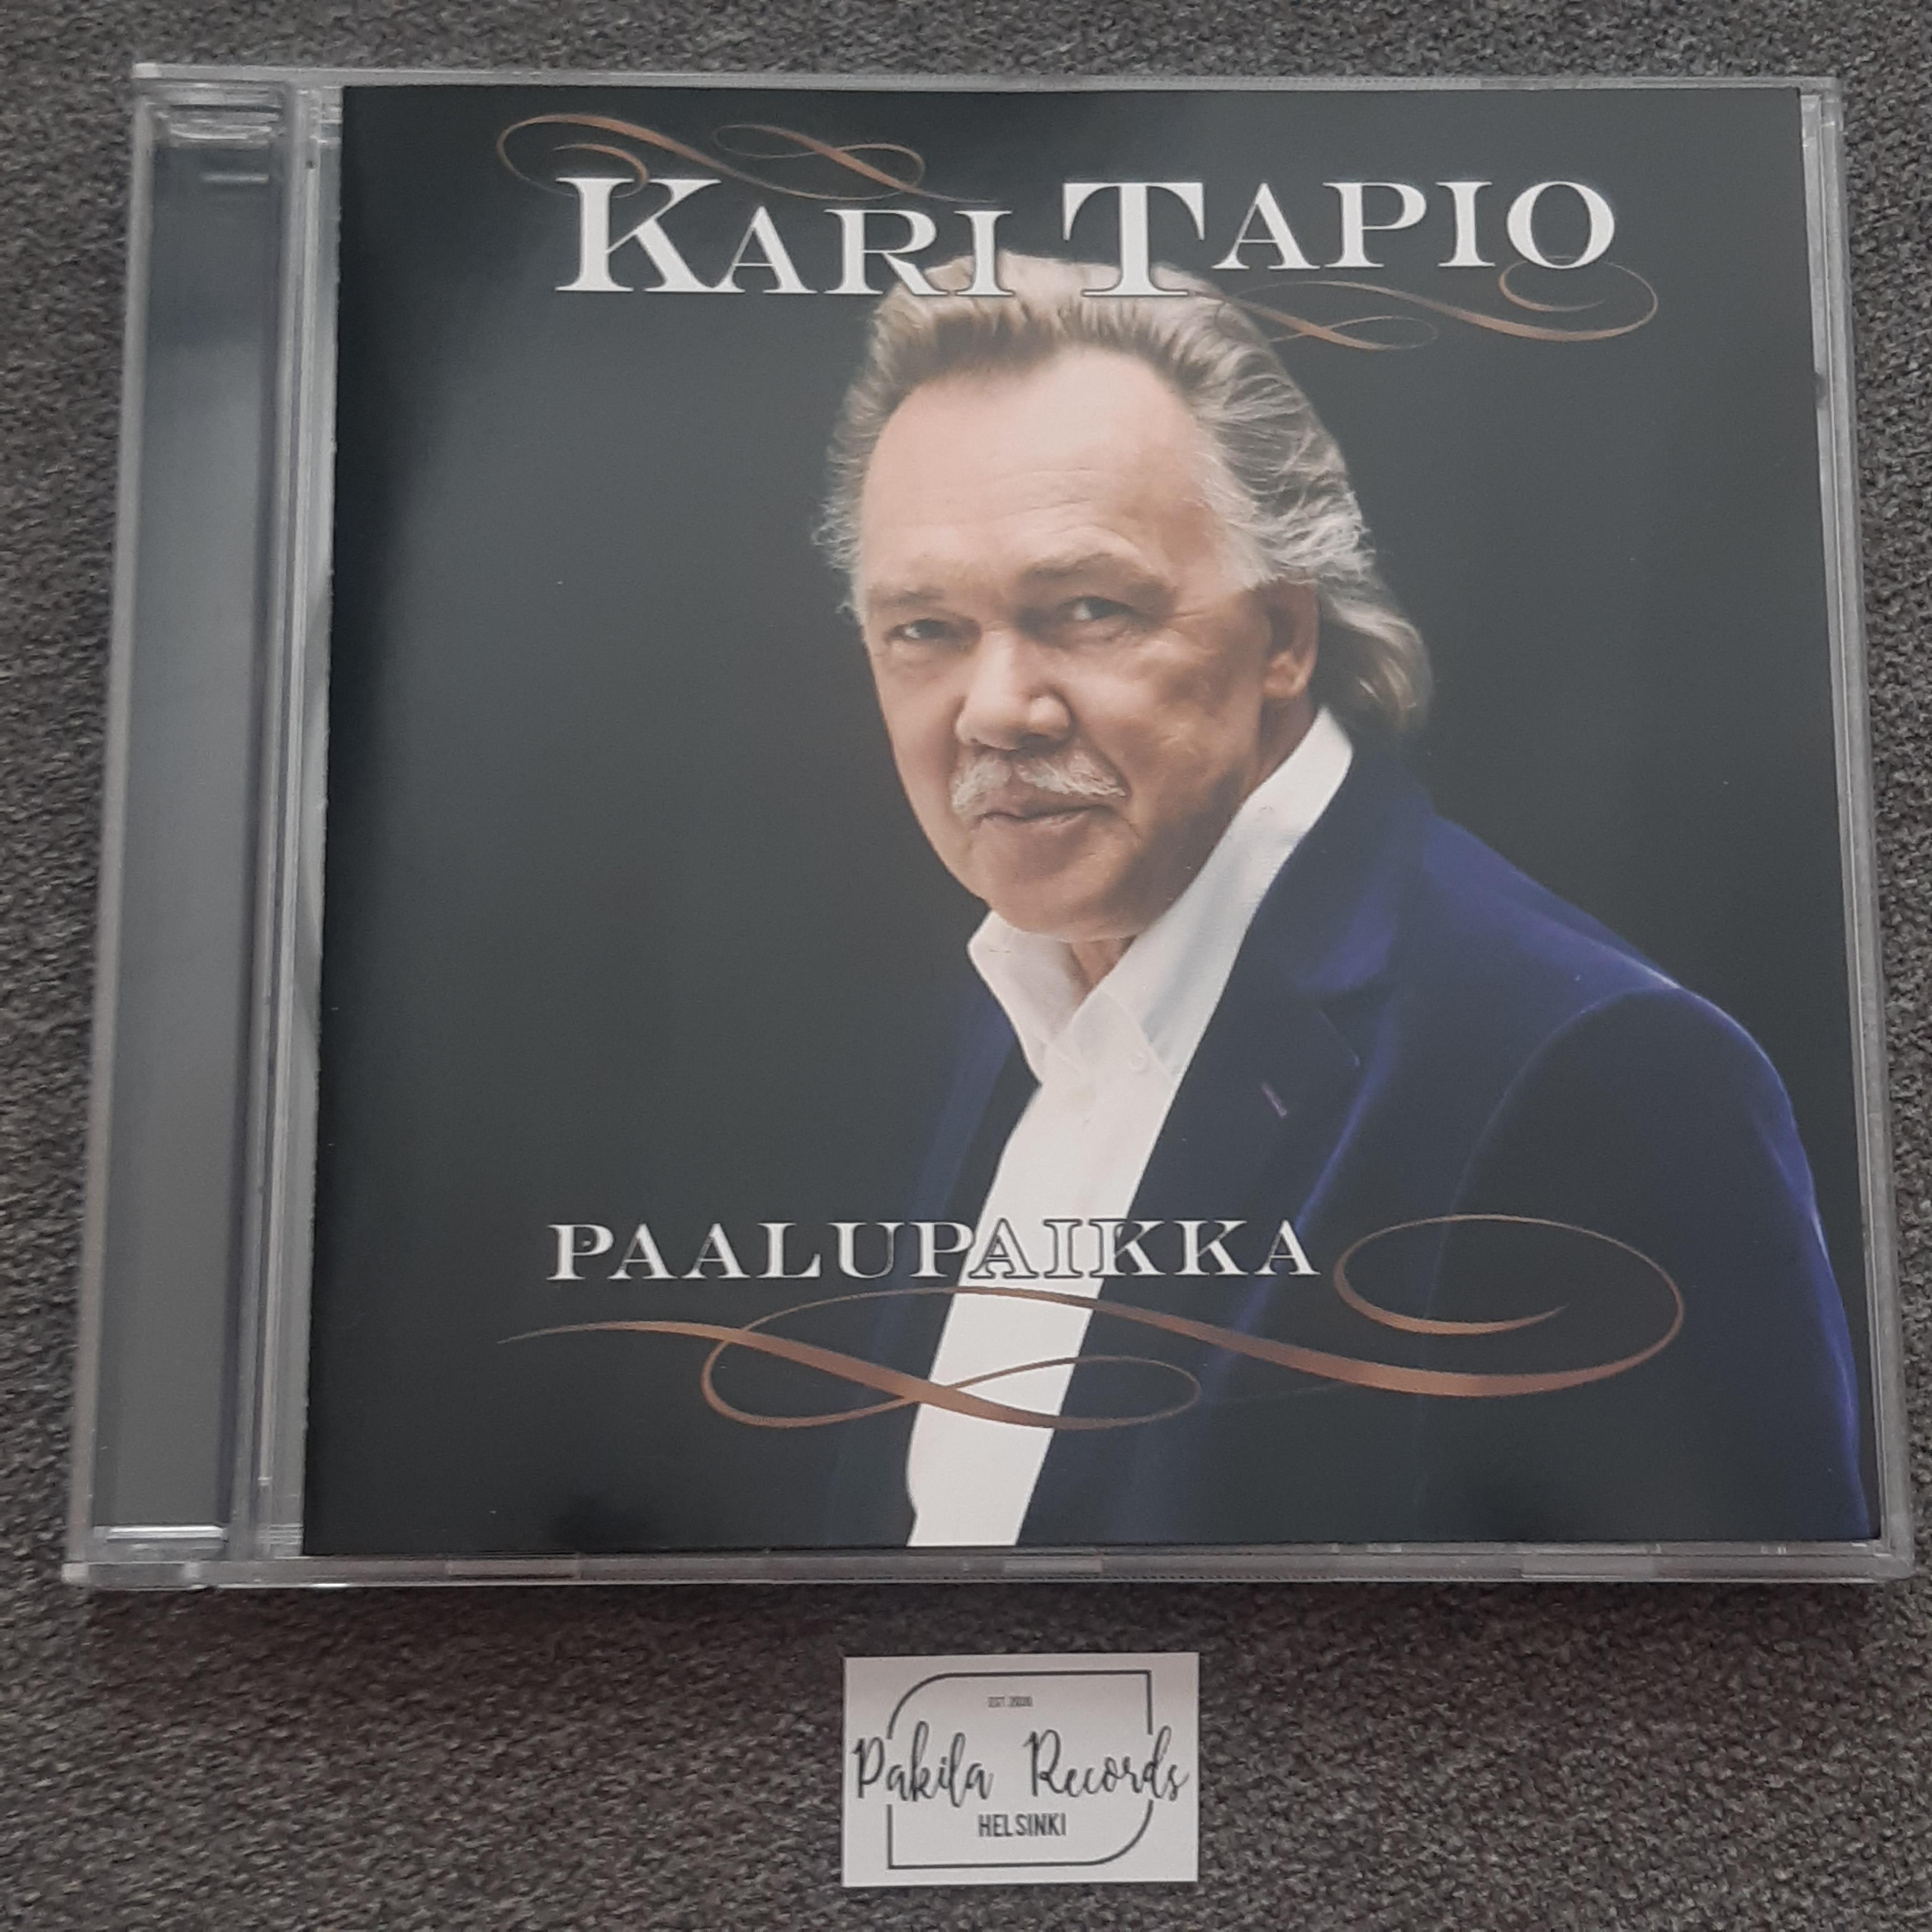 Kari Tapio - Paalupaikka - CD (käytetty)